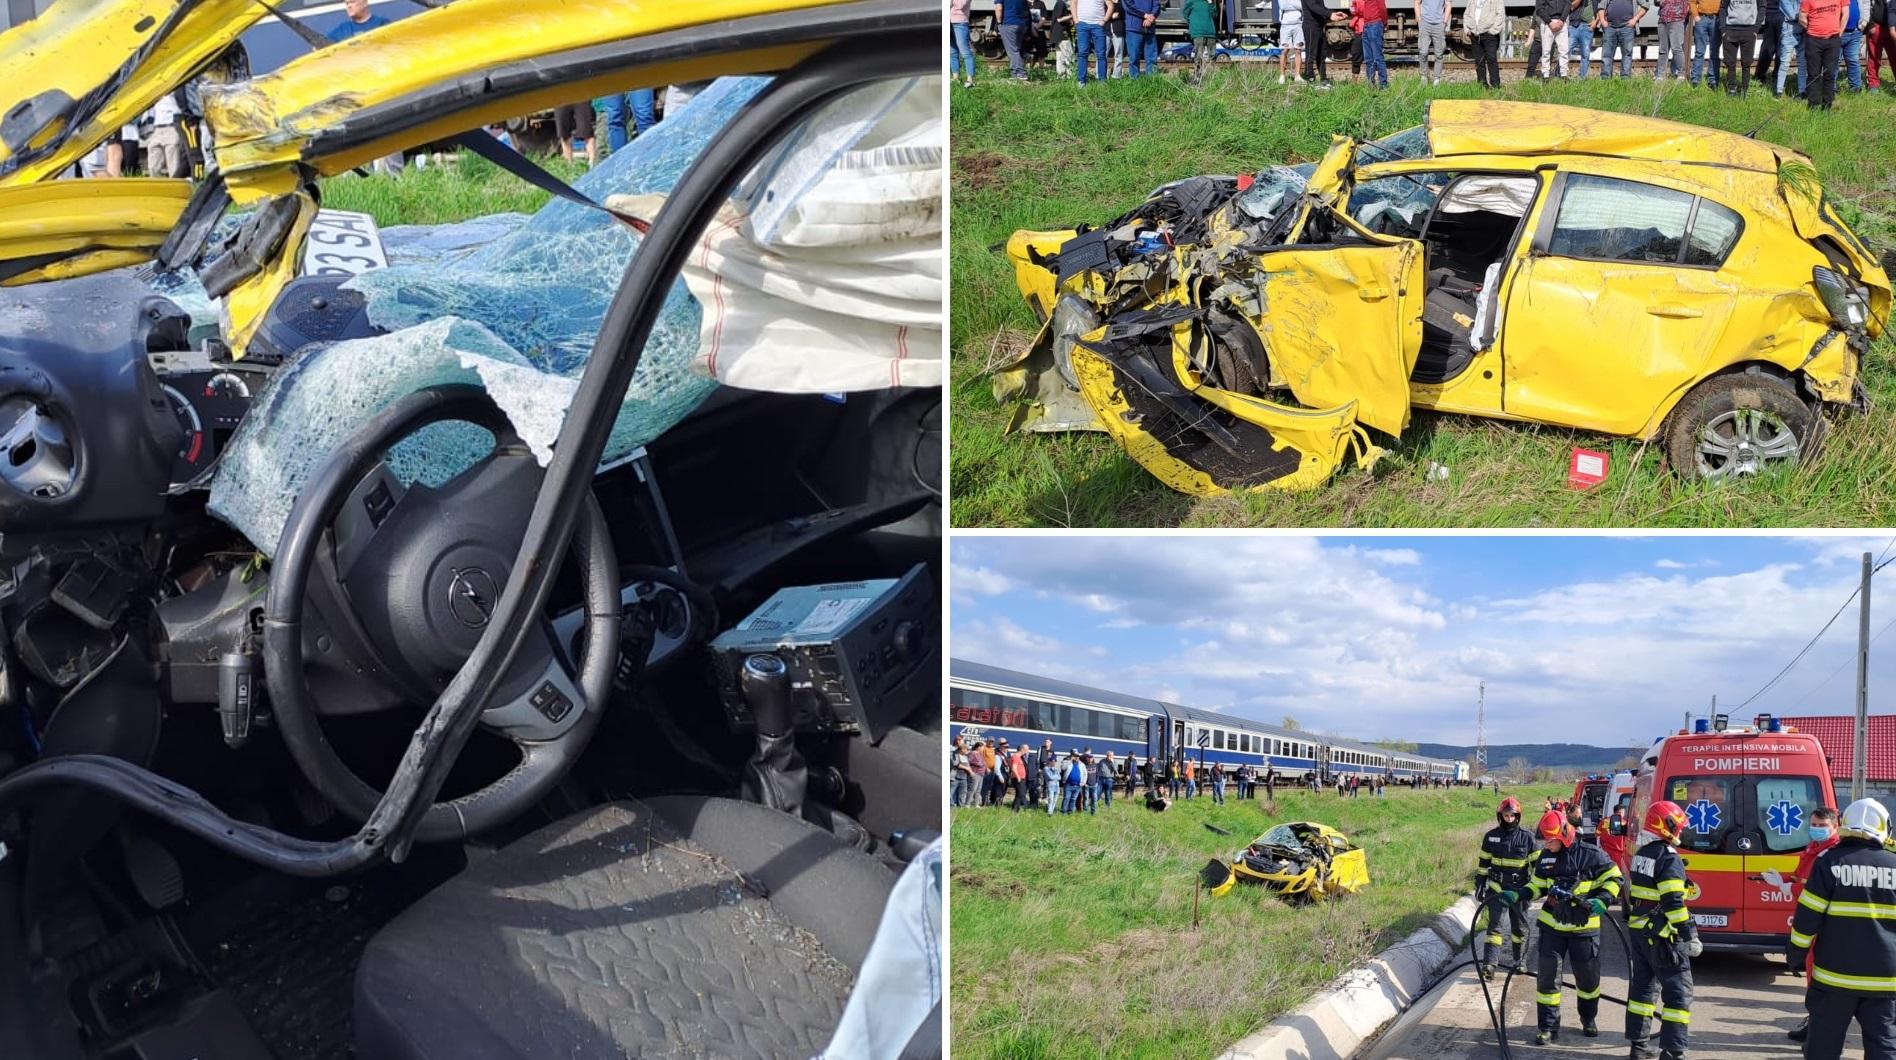 mașină împlicată într-un accident la Roșiești, în Vaslui